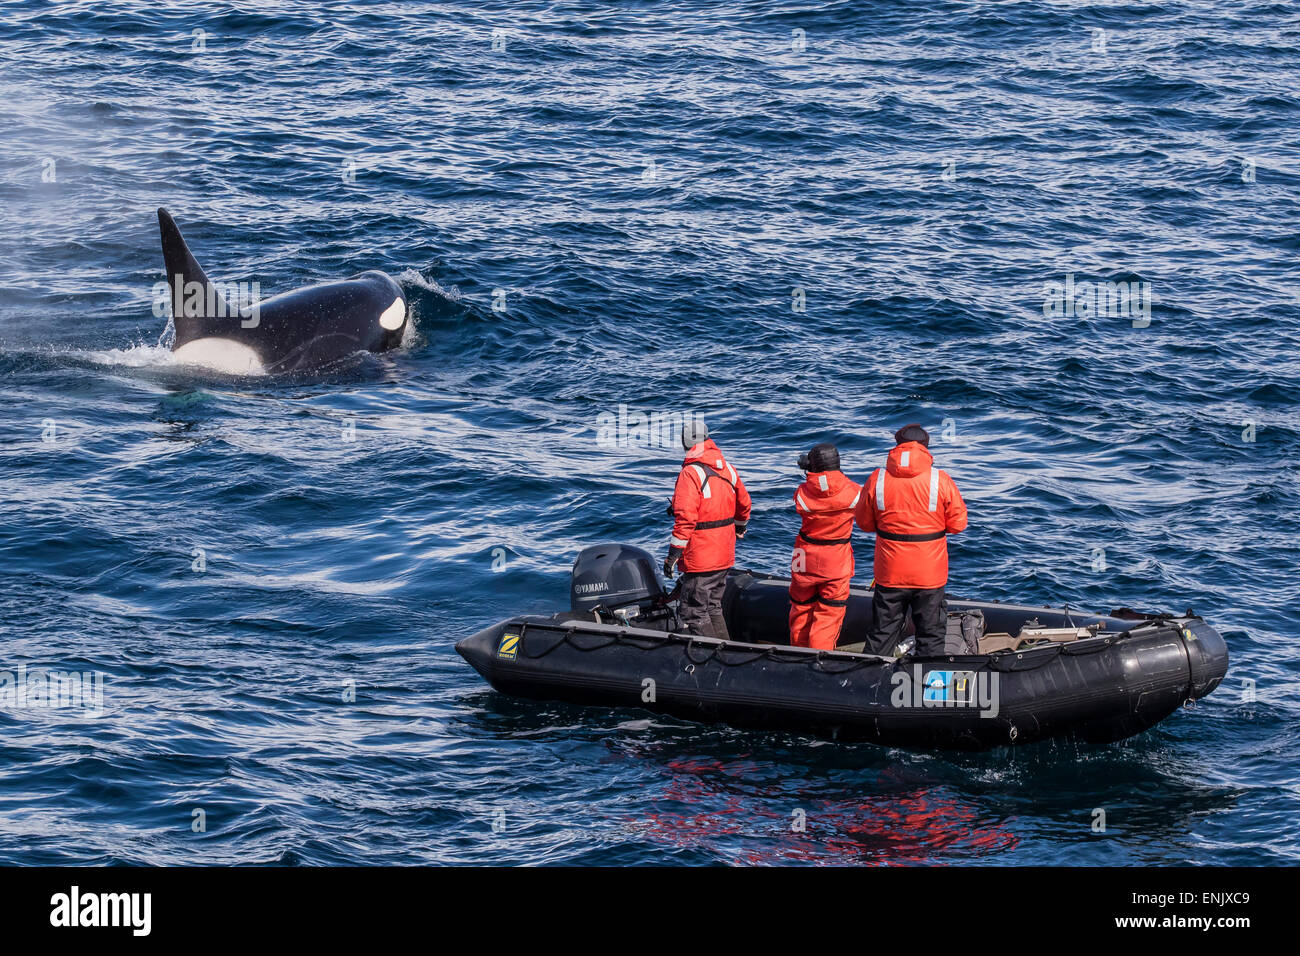 Type d'adultes un épaulard (Orcinus orca) surfacing près de chercheurs dans le détroit de Gerlache, l'Antarctique, régions polaires Banque D'Images